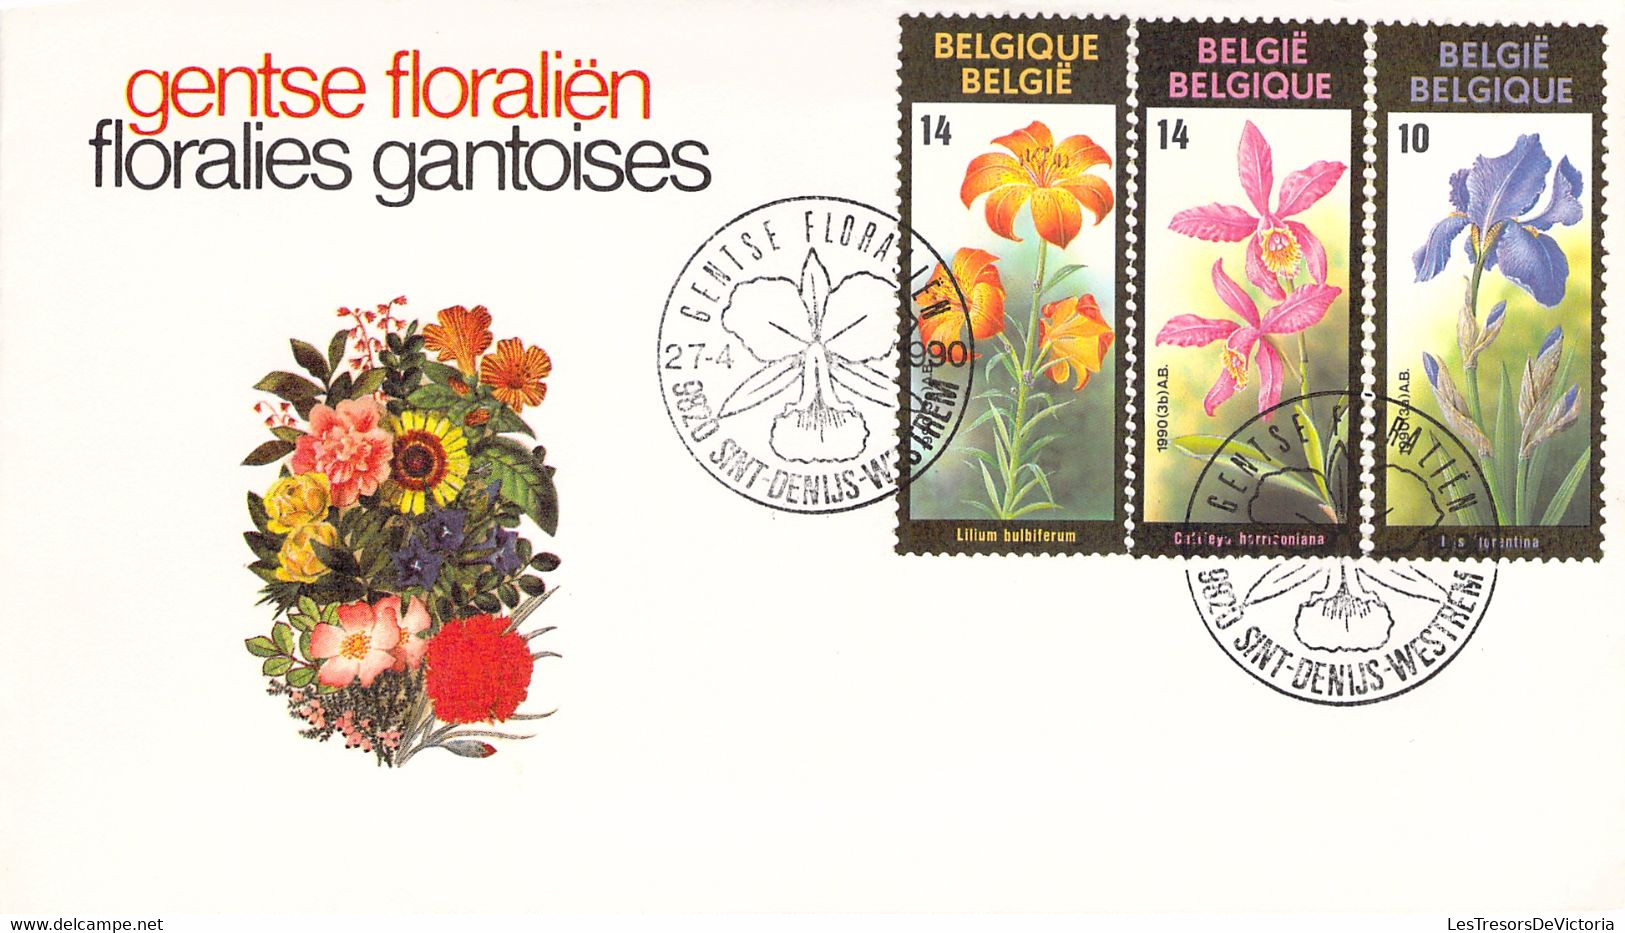 Belgique - Lot de 4 enveloppes - Gentse floralien - Floralies gantoises - FDC - 1985